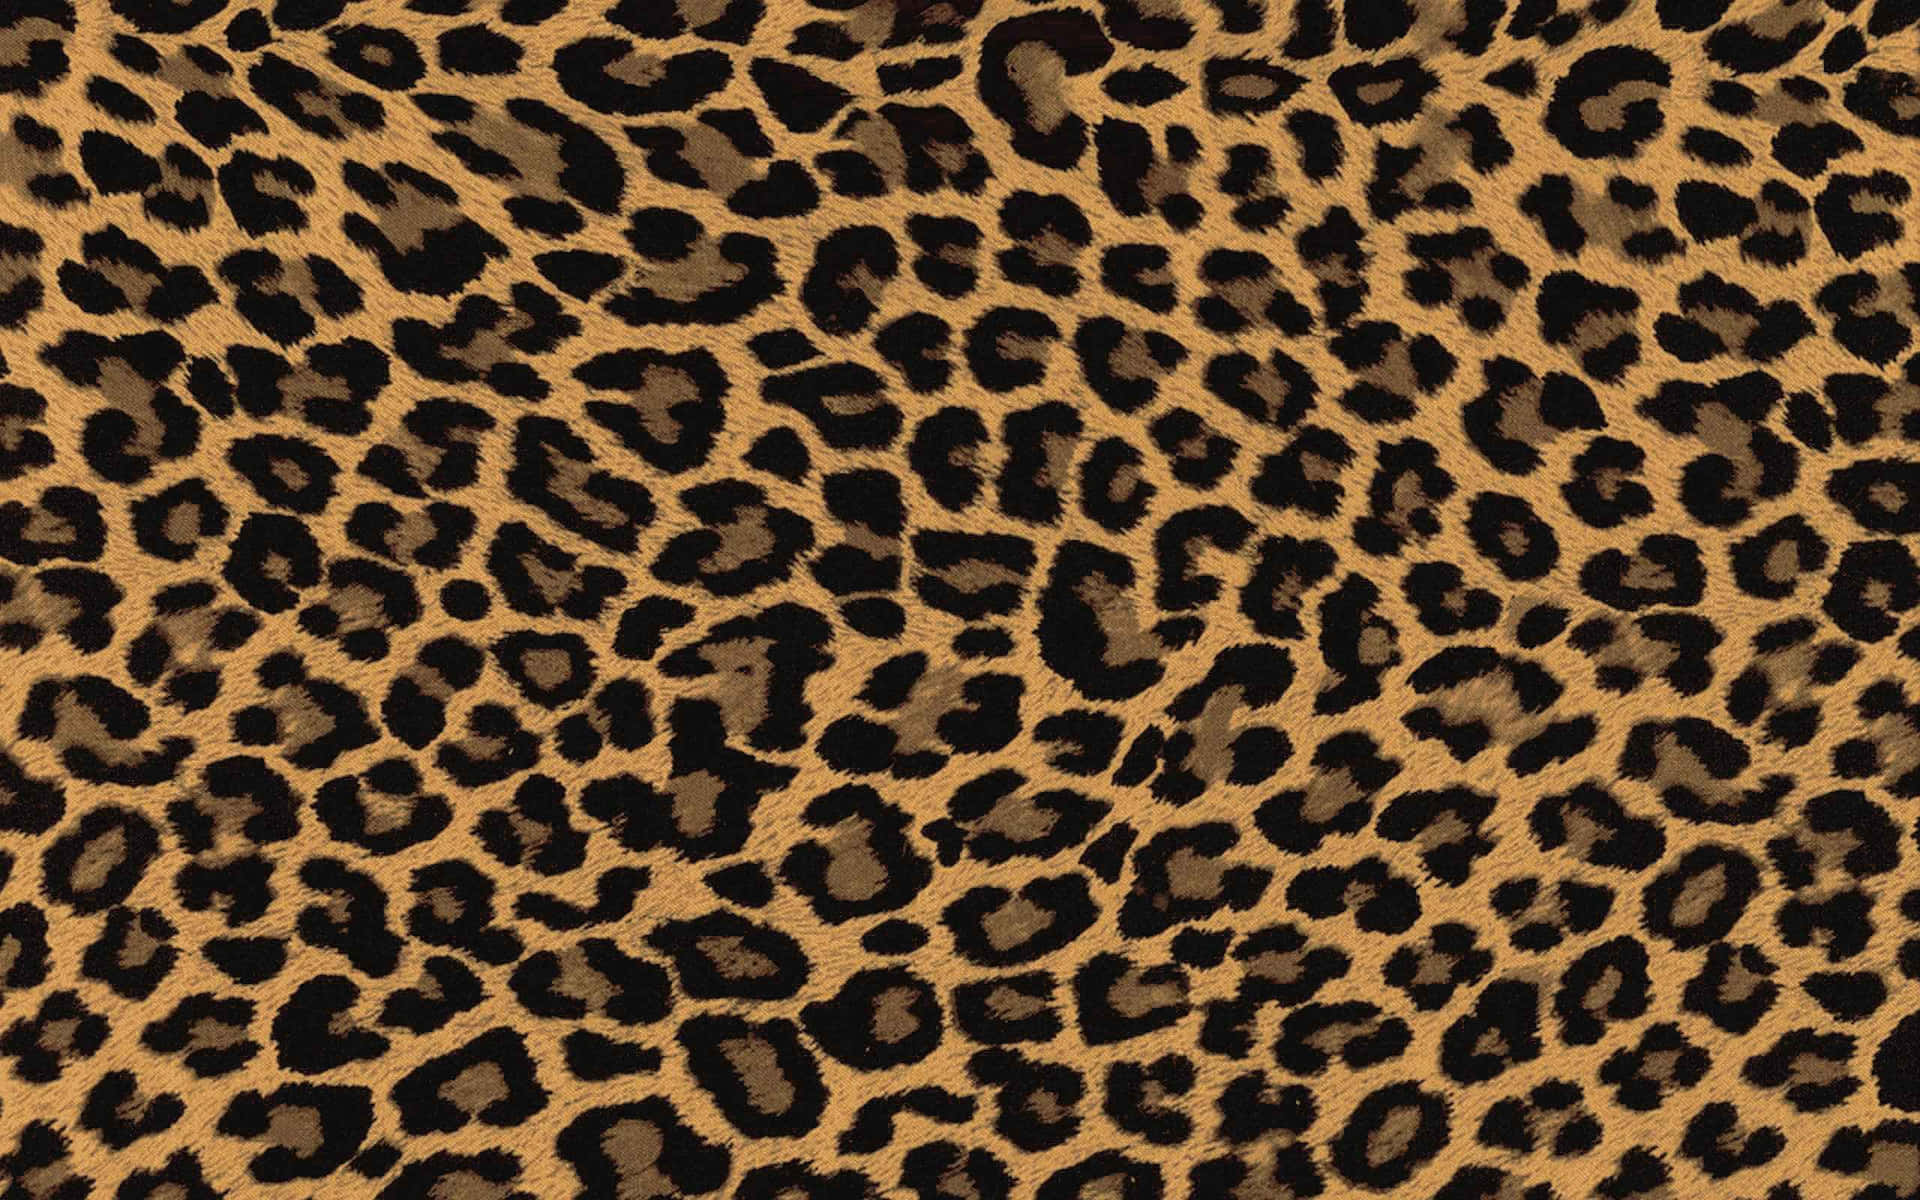 Icolori Vivaci Rendono Questo Motivo Leopard Print Ancora Più Vivace.